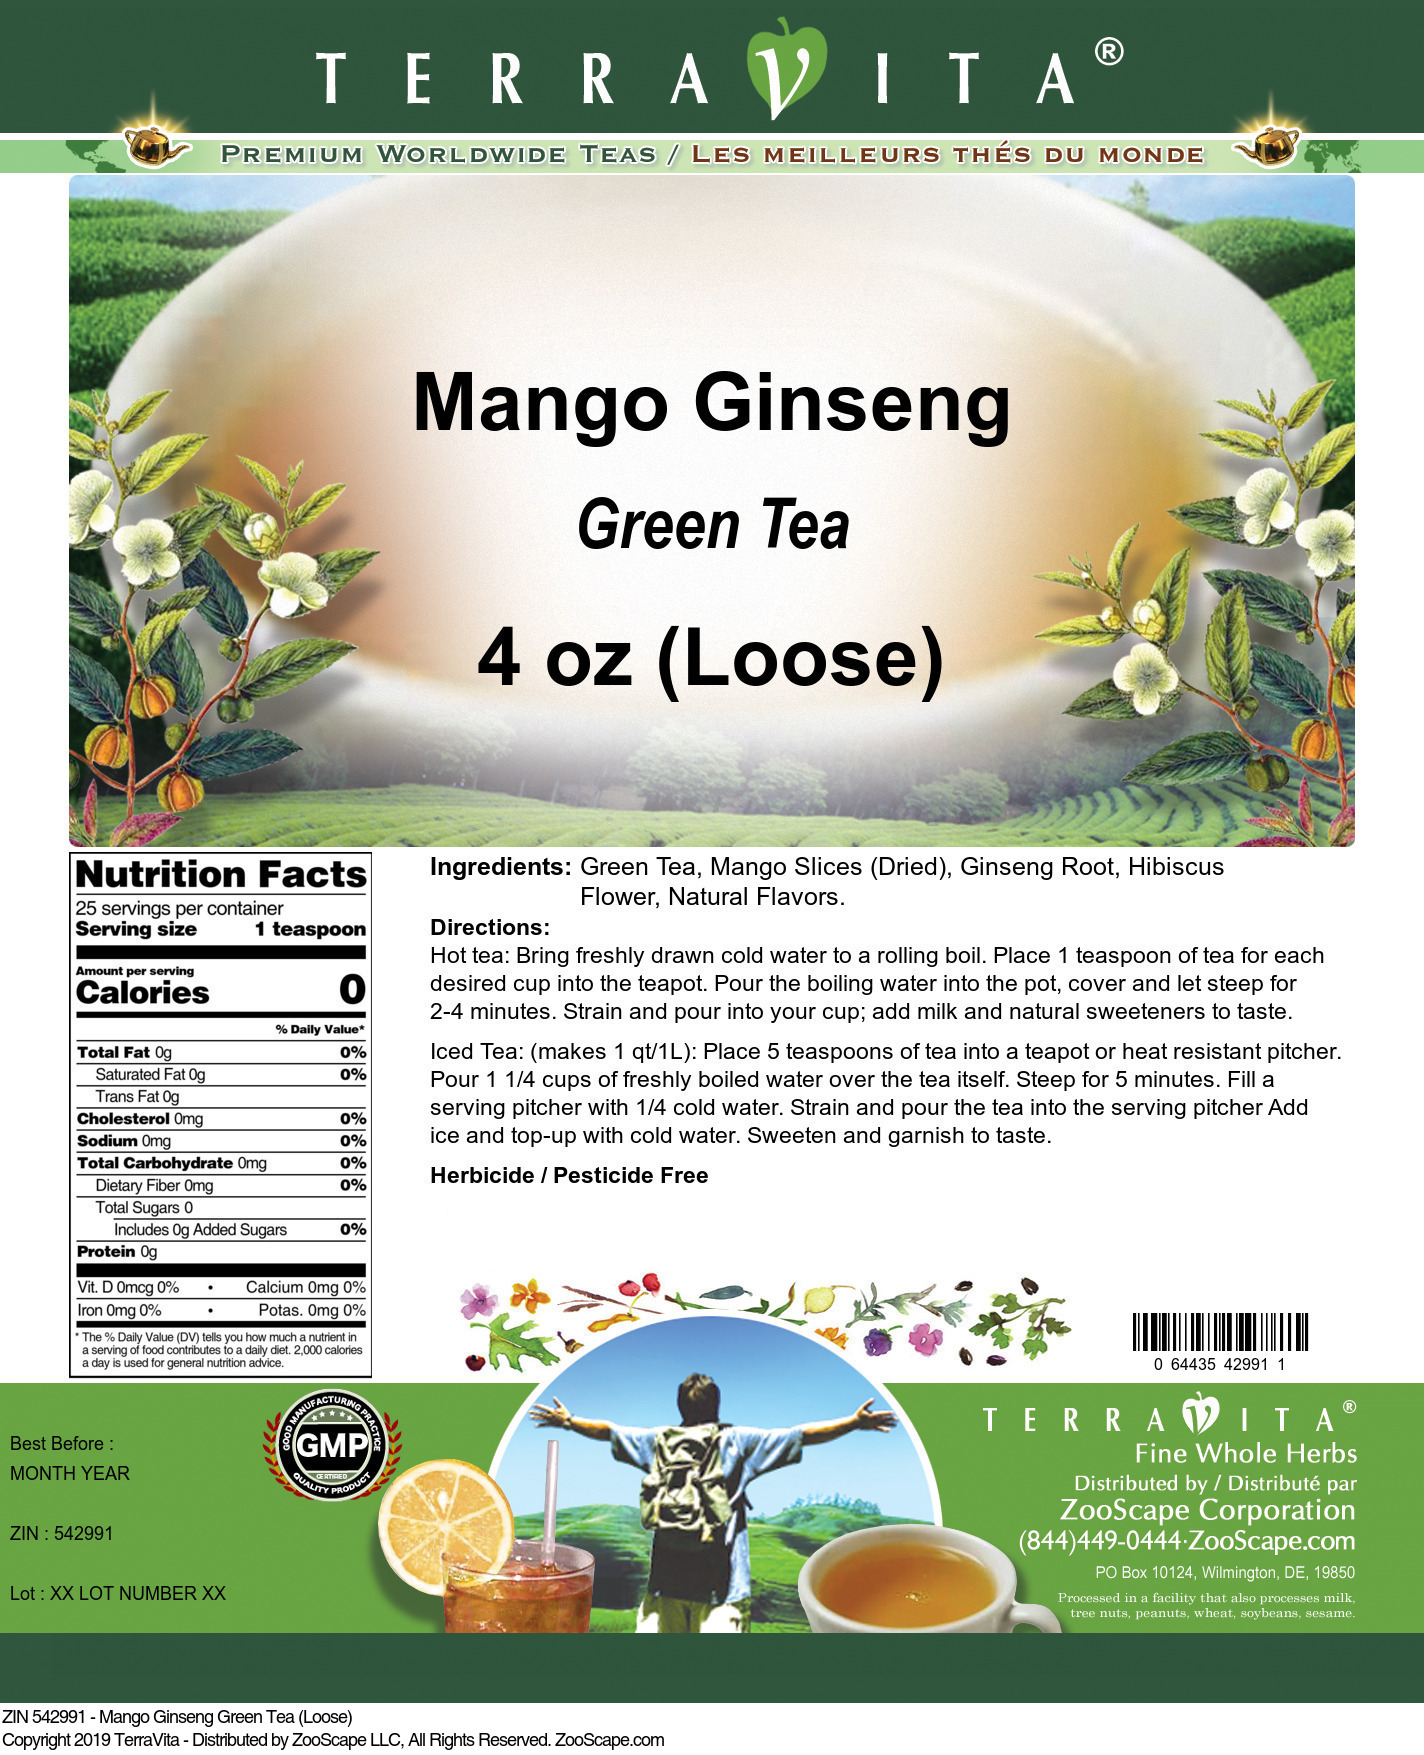 Mango Ginseng Green Tea (Loose) - Label